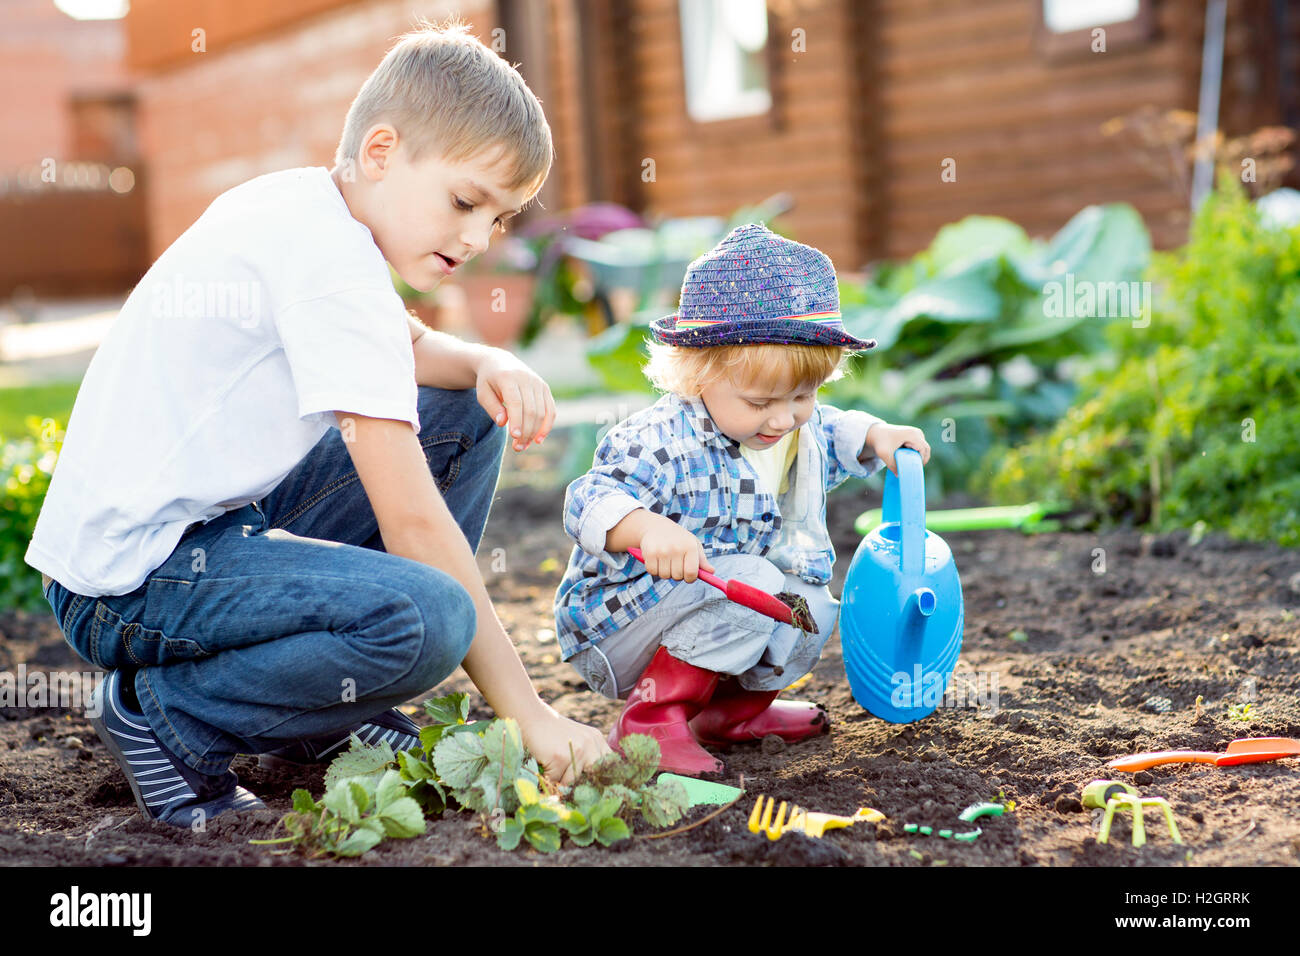 Children planting strawberry seedling in to fertile soil outside in garden Stock Photo